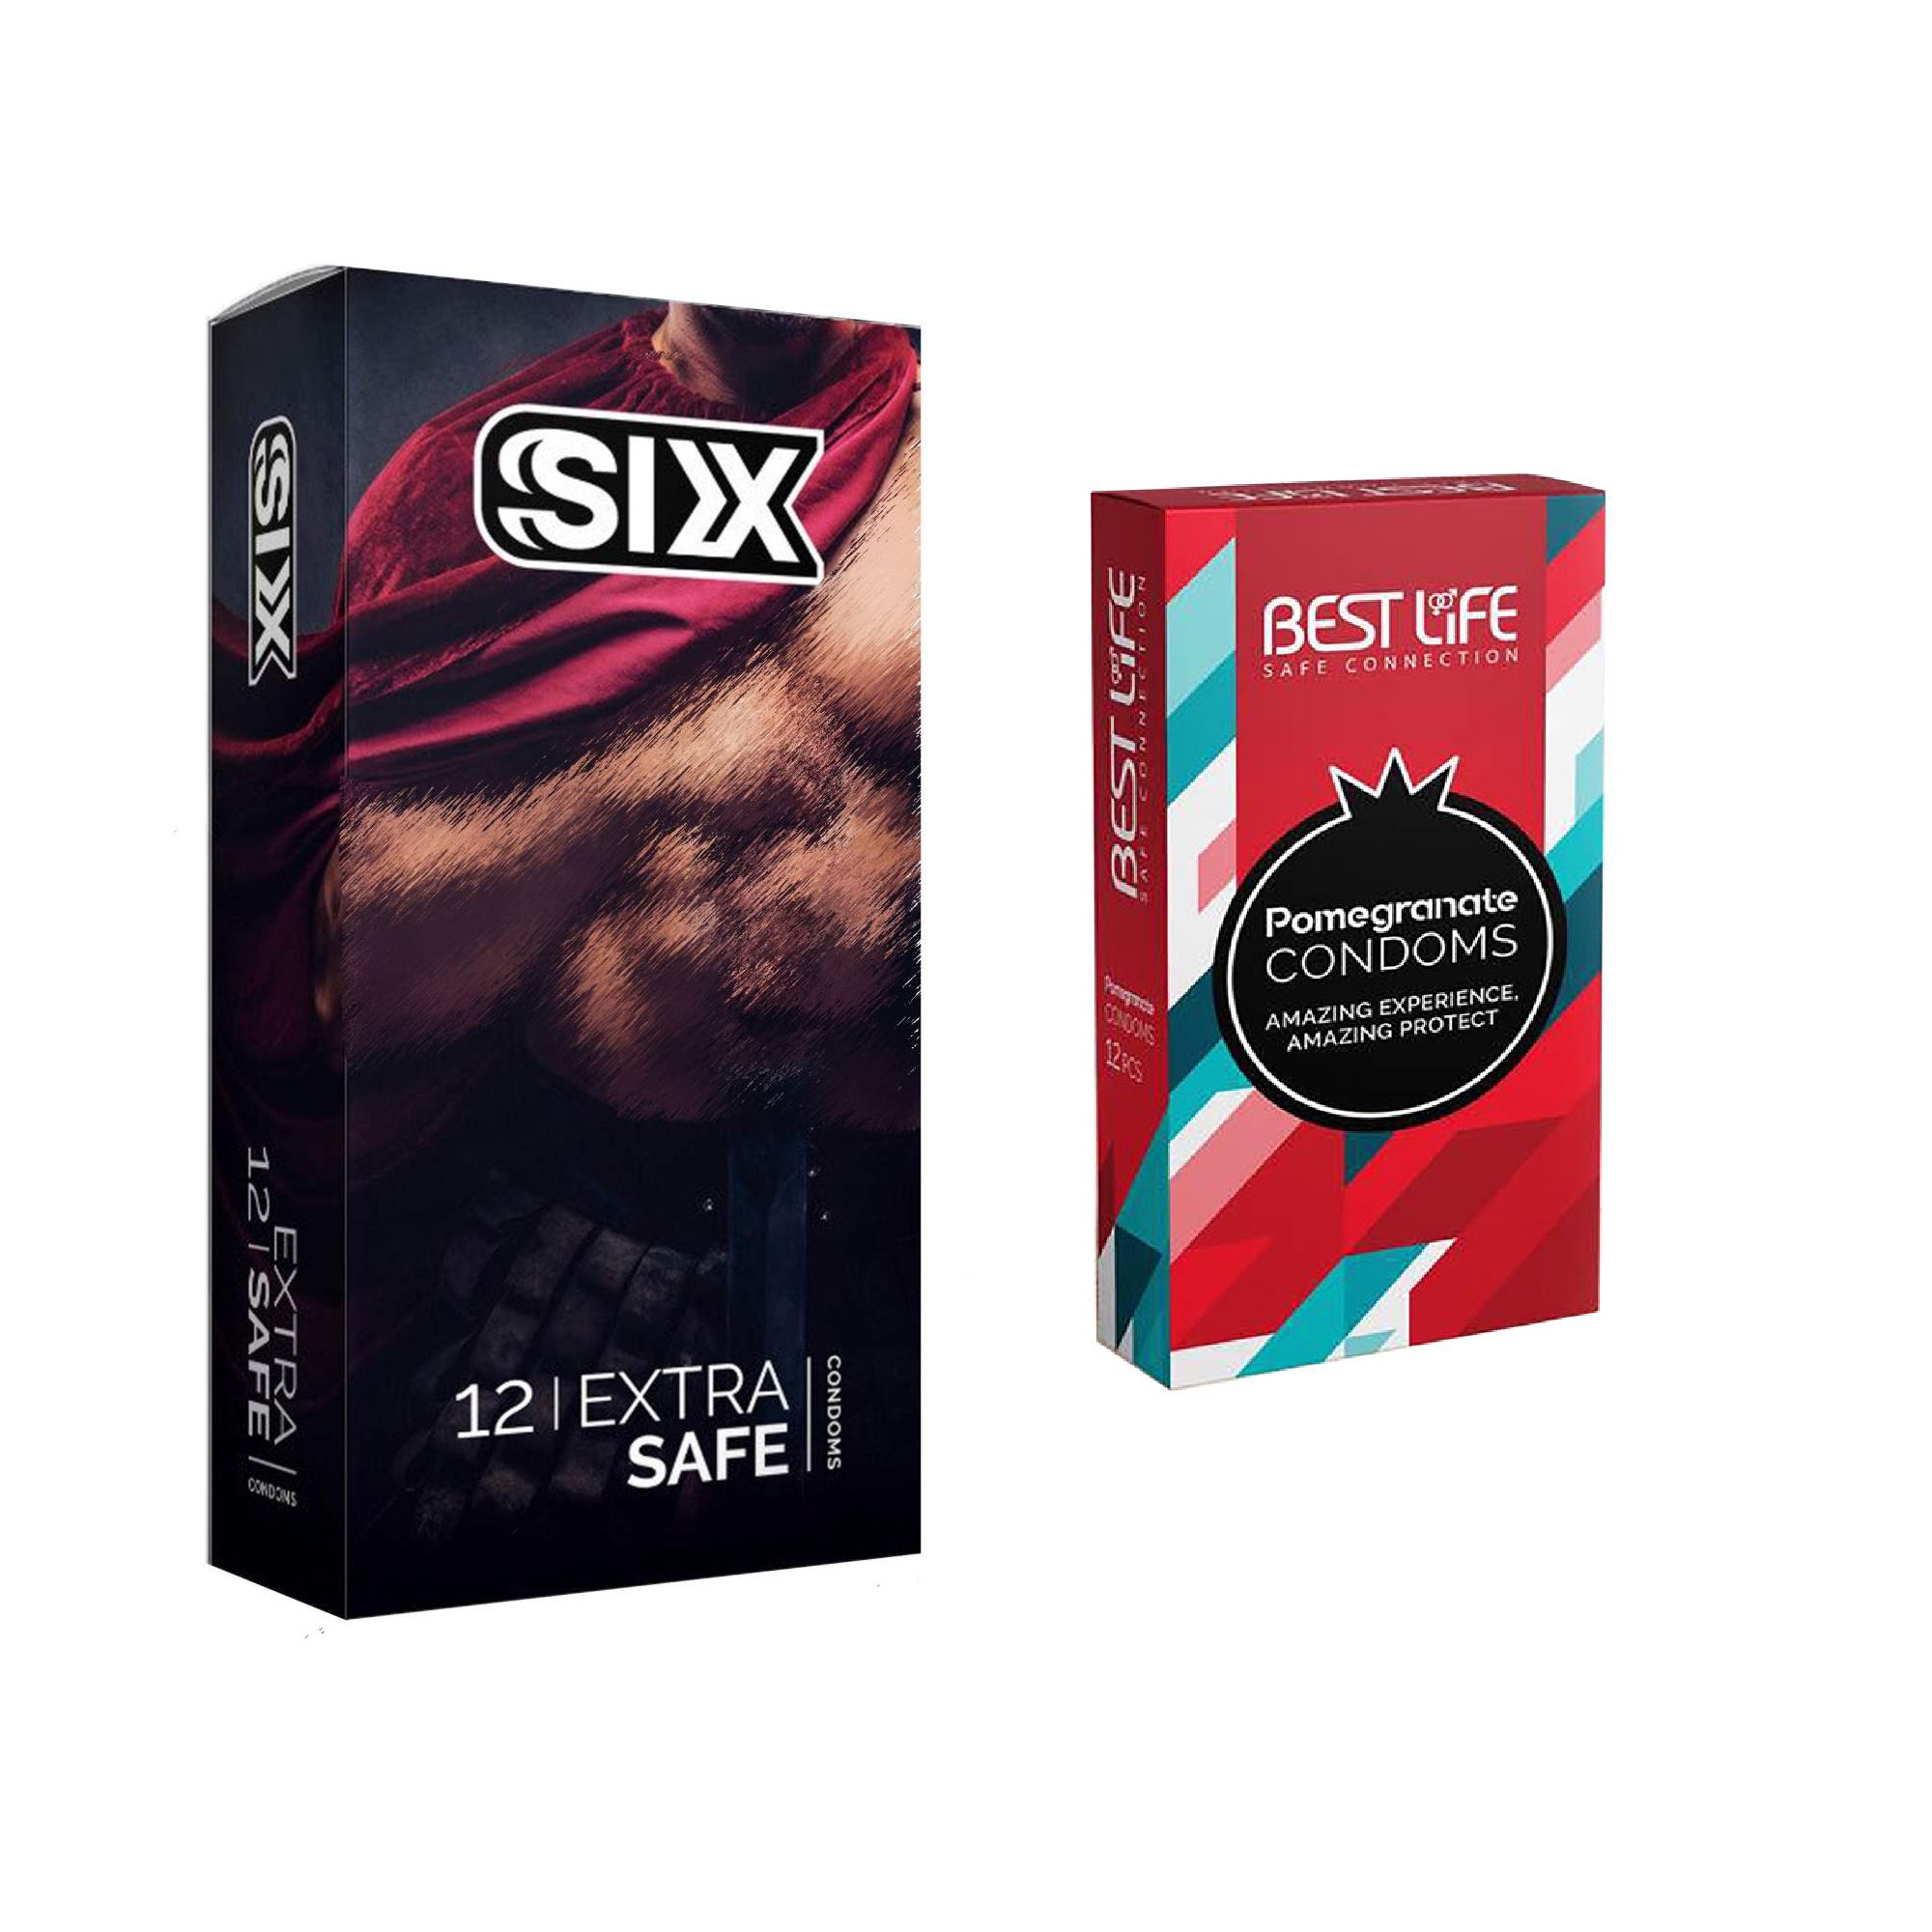 کاندوم سیکس مدل Max Safety بسته 12 عددی به همراه کاندوم بست لایف مدل Pomegranate  بسته 12 عددی